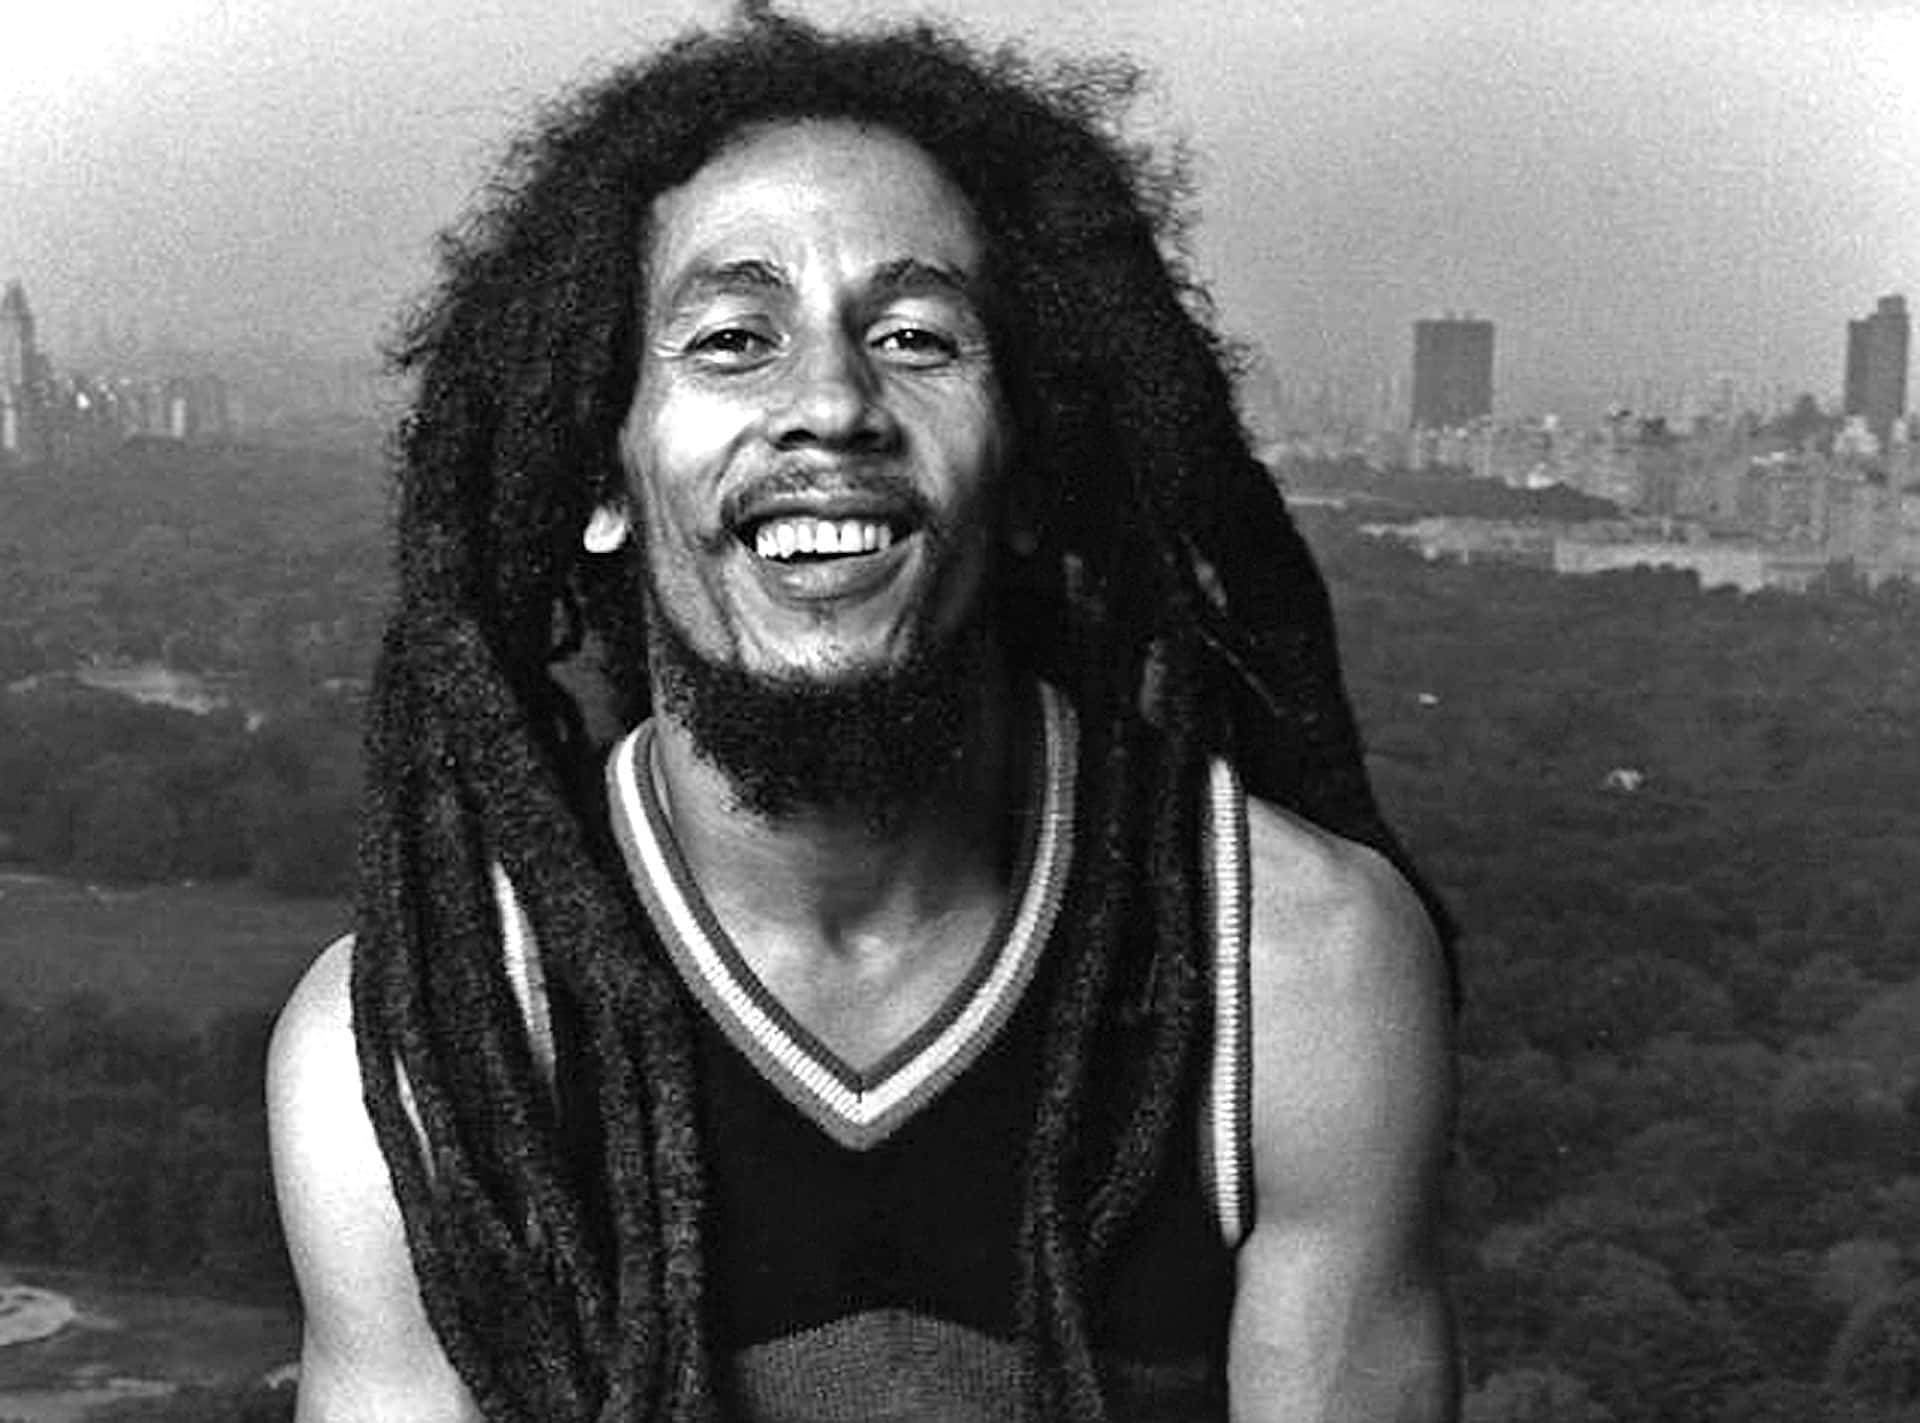 Bob Marley - A Legend and a Pioneer of Reggae